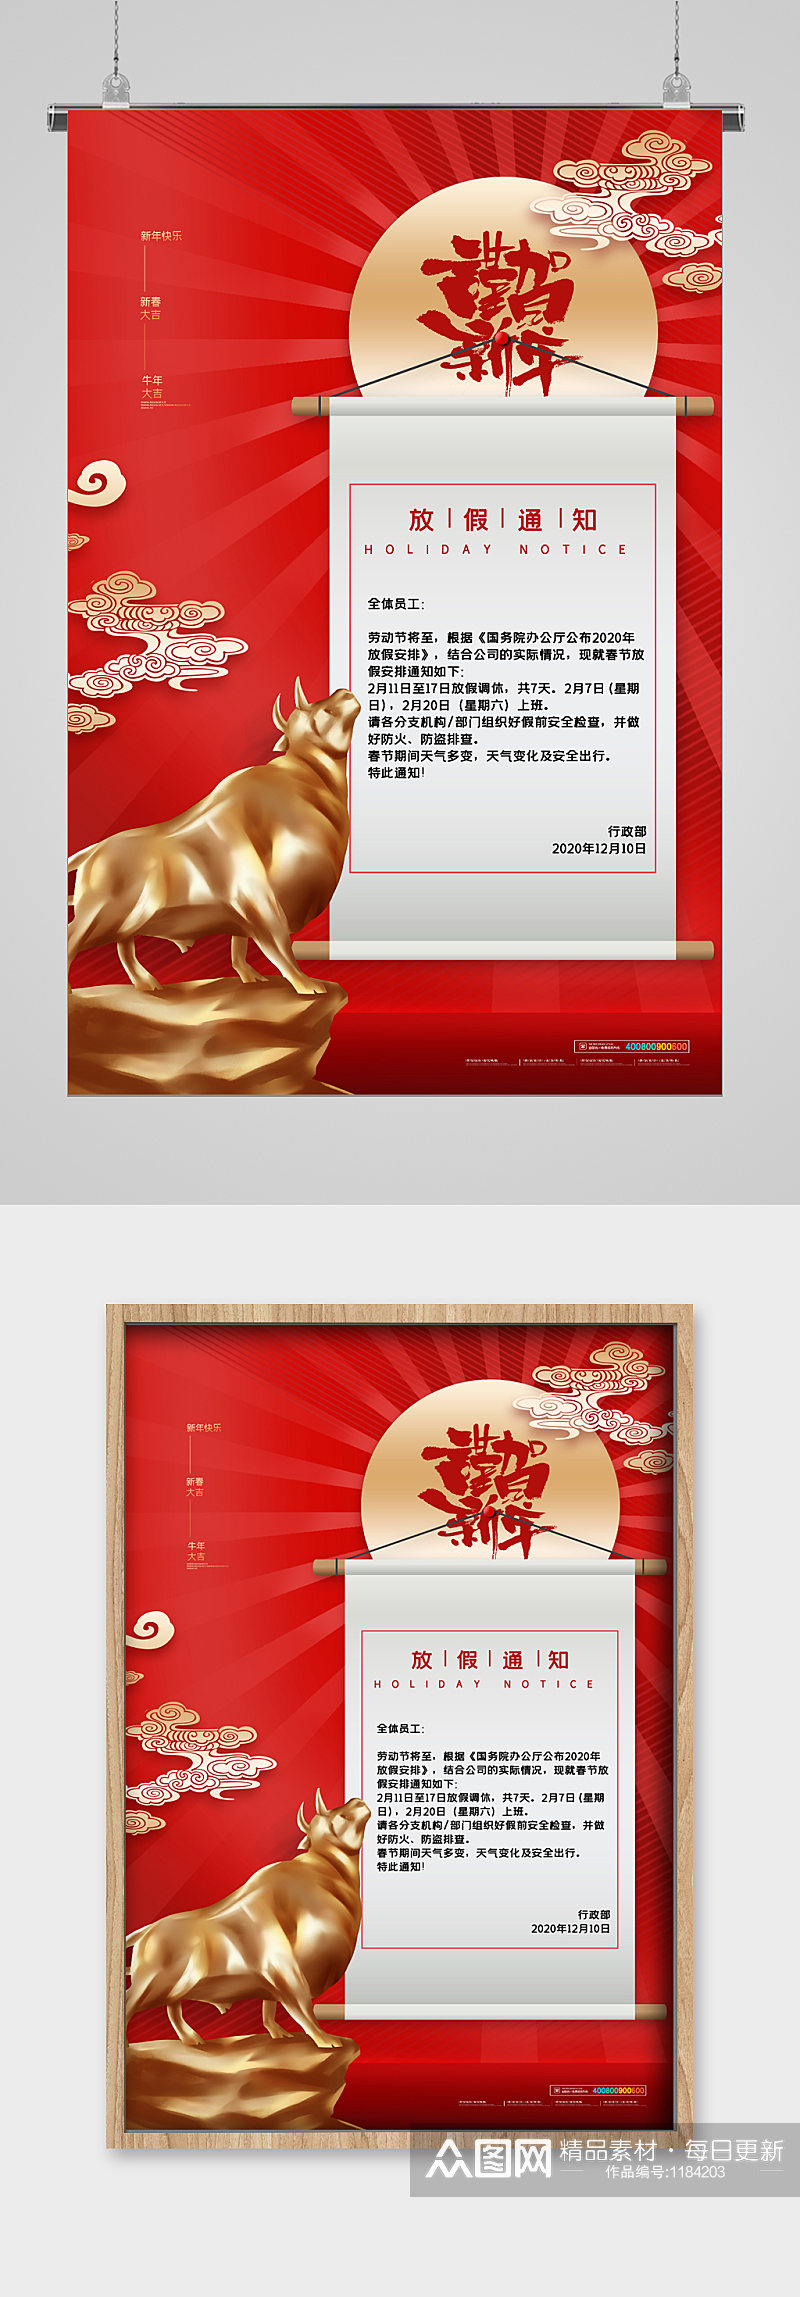 红色喜庆春节放假通知海报素材